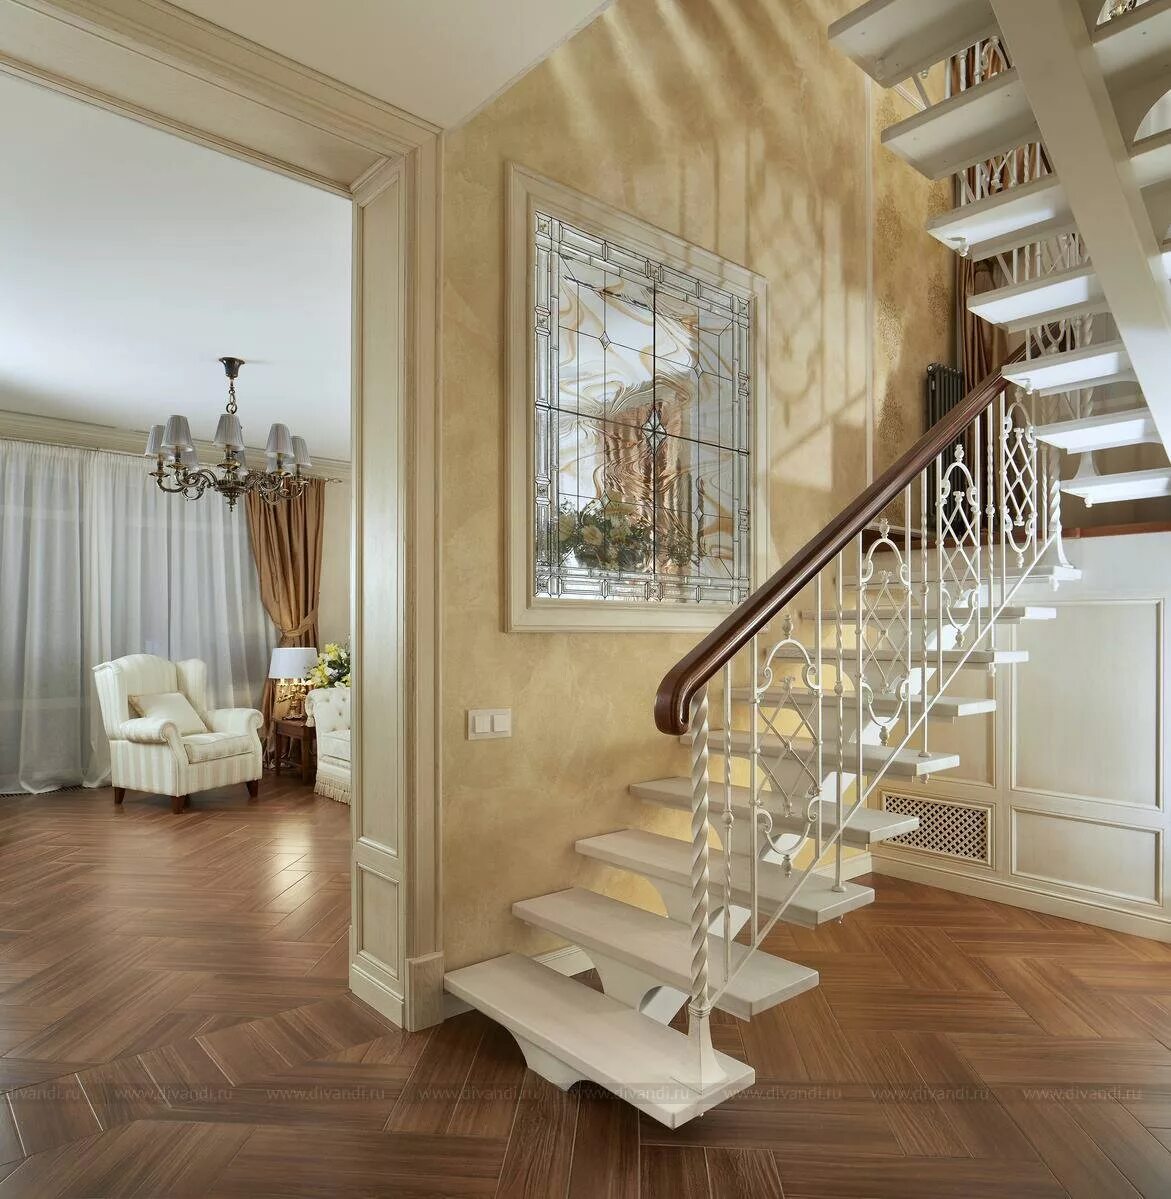 Лестница лс-92м. Лестница в доме. Лестница в интерьере. Лестница в коттедже. Как сделать красивые лестницы